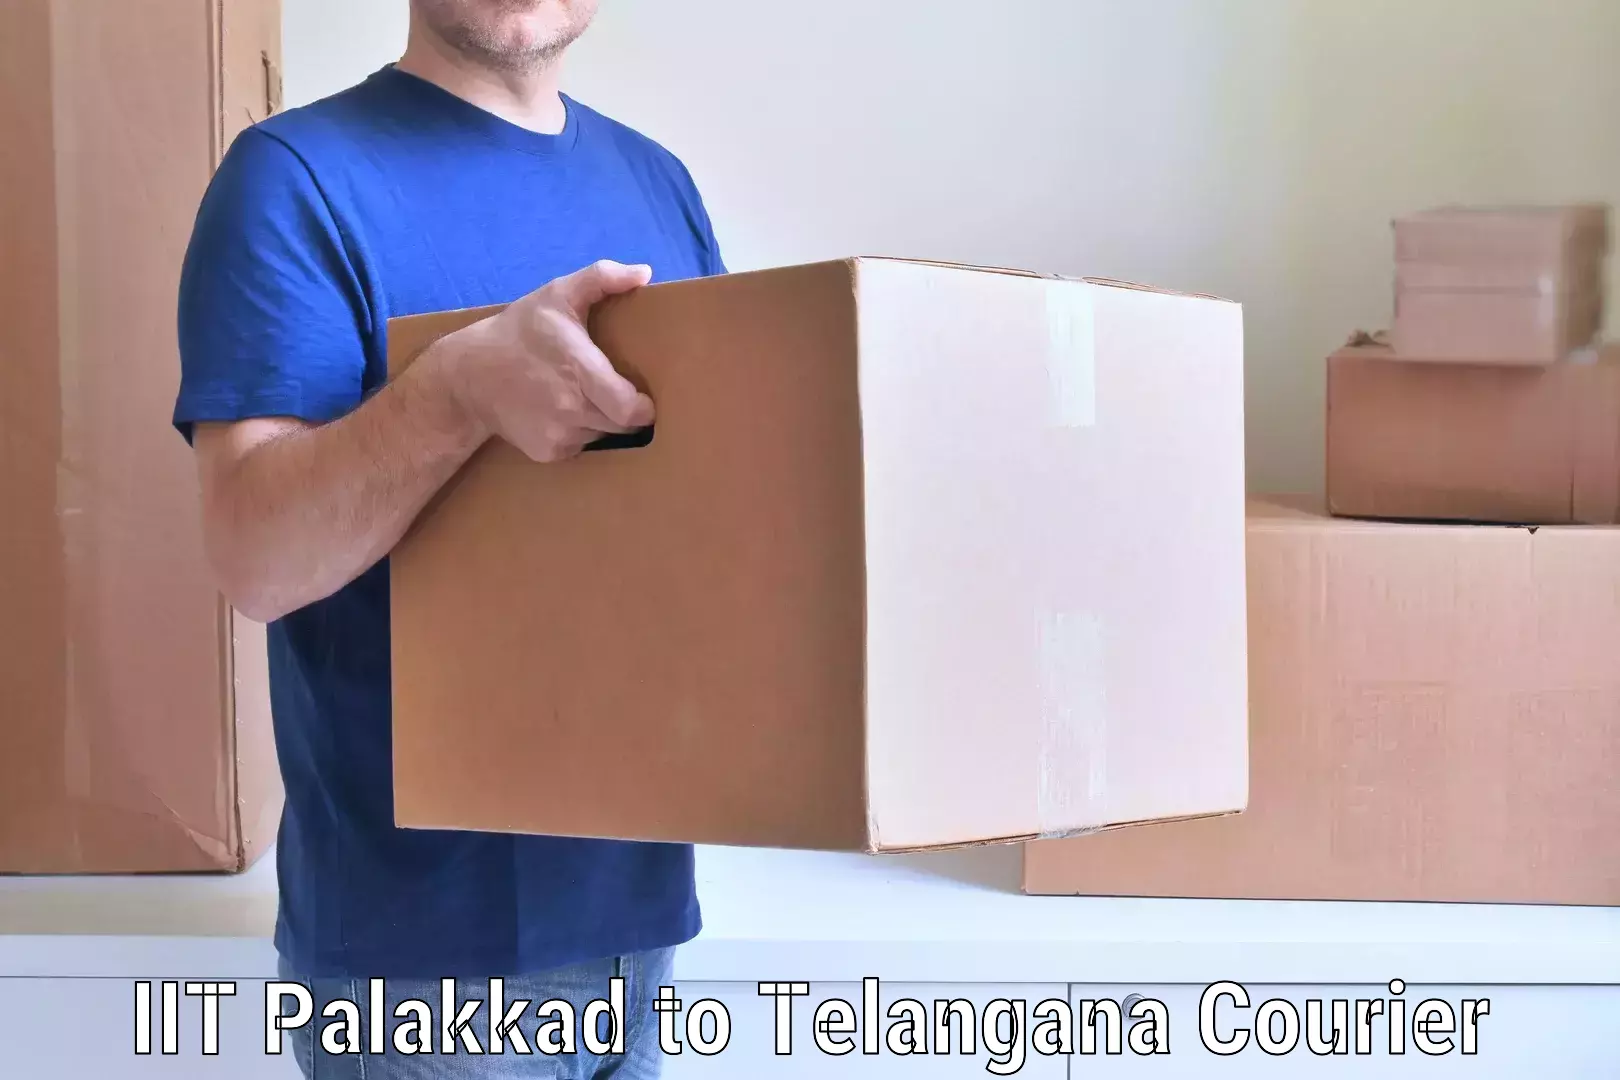 Trusted furniture movers IIT Palakkad to Adilabad